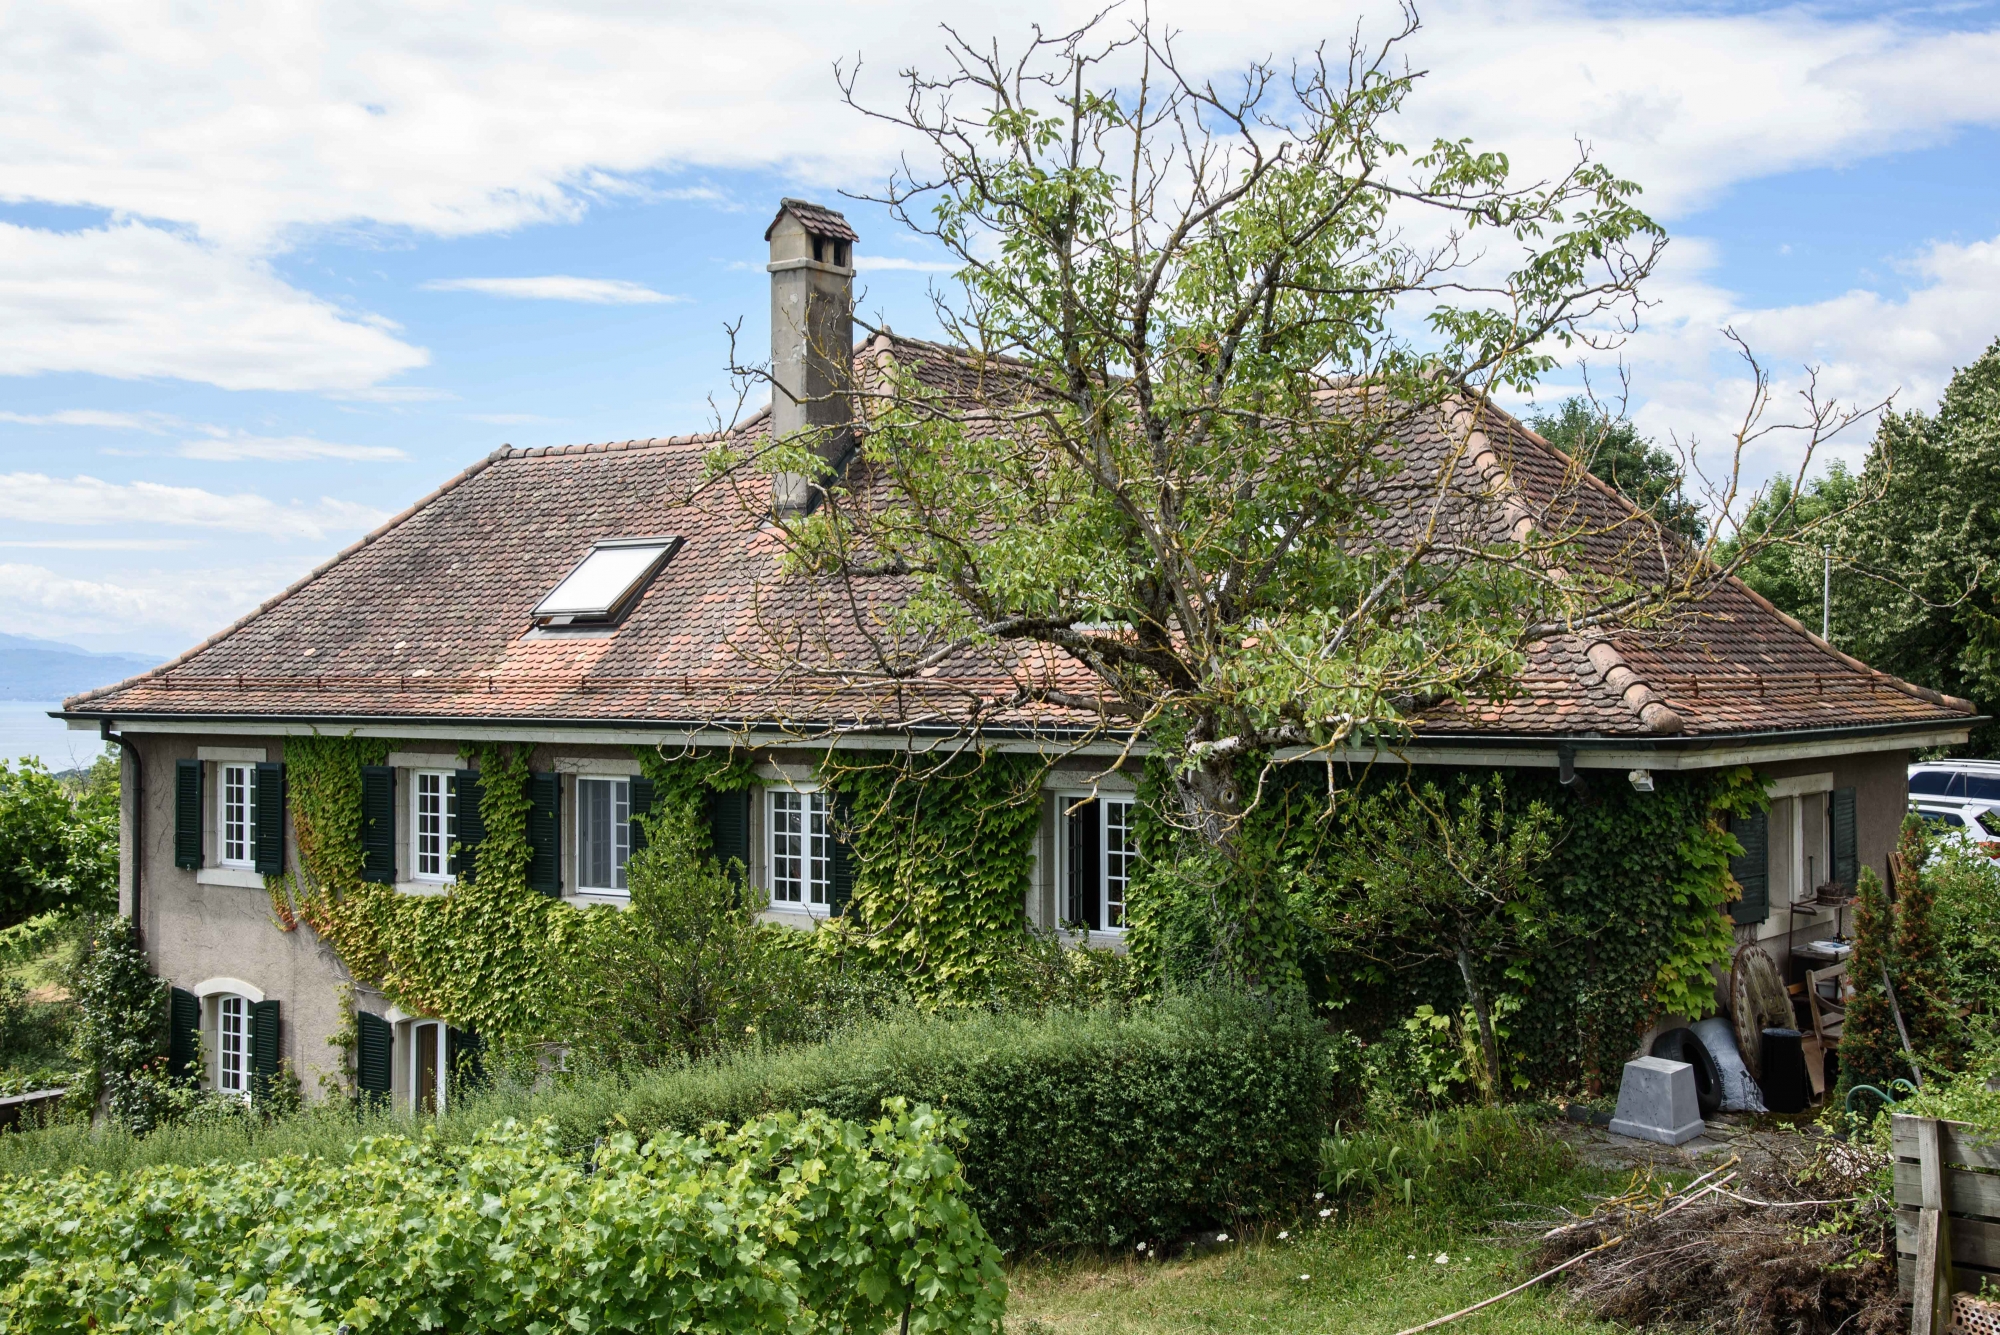 Aubonne, mercredi 12 juillet 2017, route de Bougy 53, photos de la villa qui sert de locaux pour l'Ecole Germaine de Stael, photos Cédric Sandoz